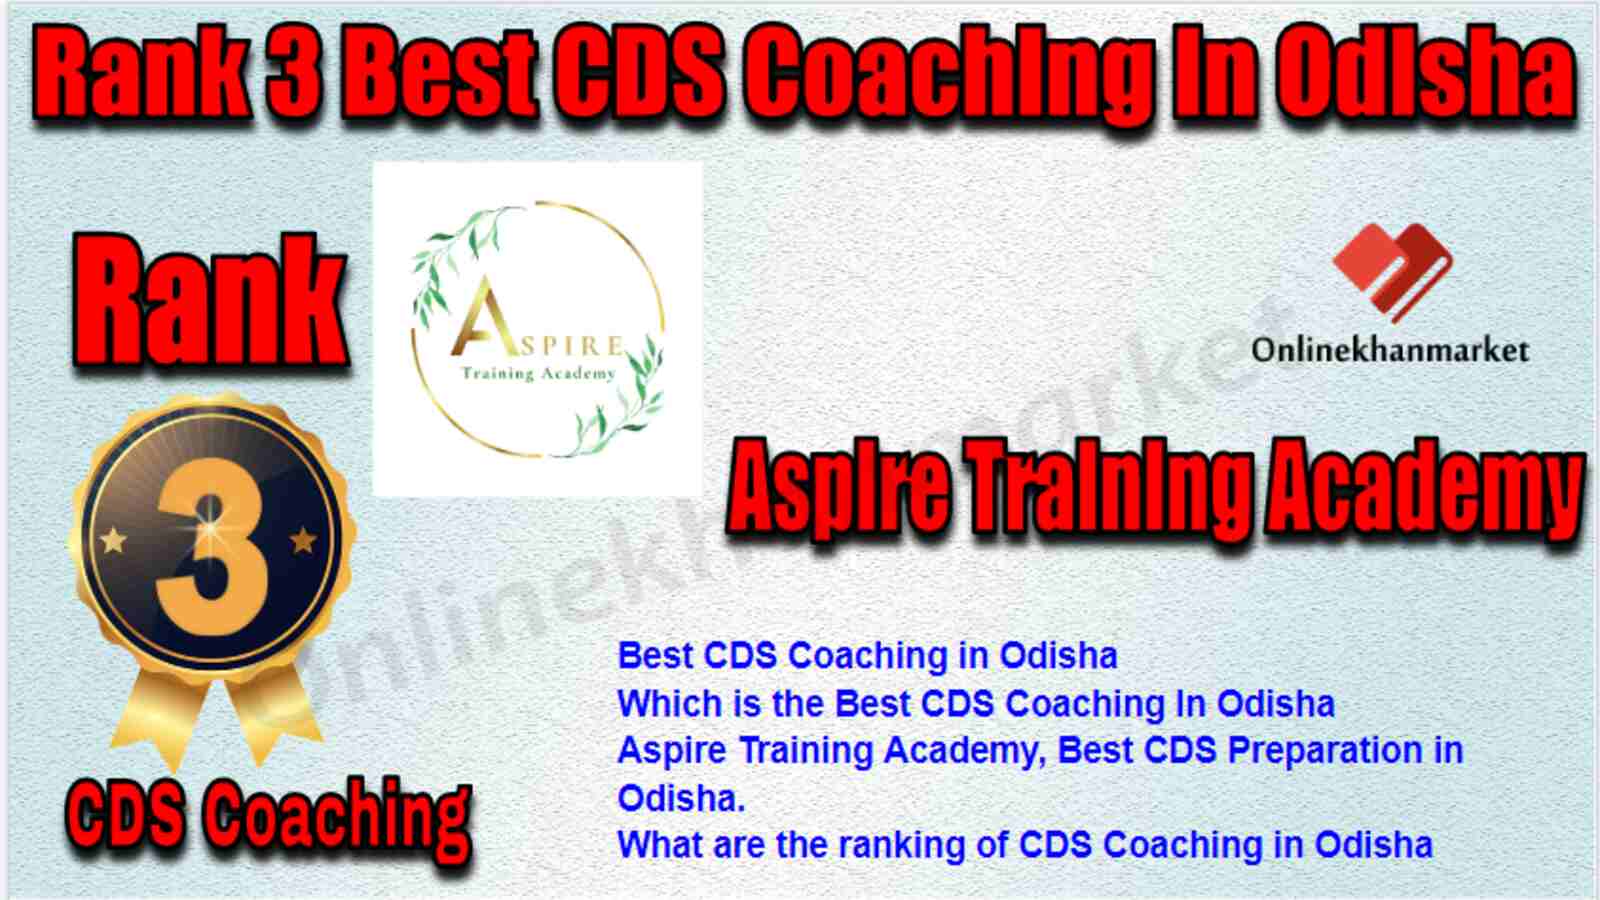 Rank 3 Best CDS Coaching in Odisha